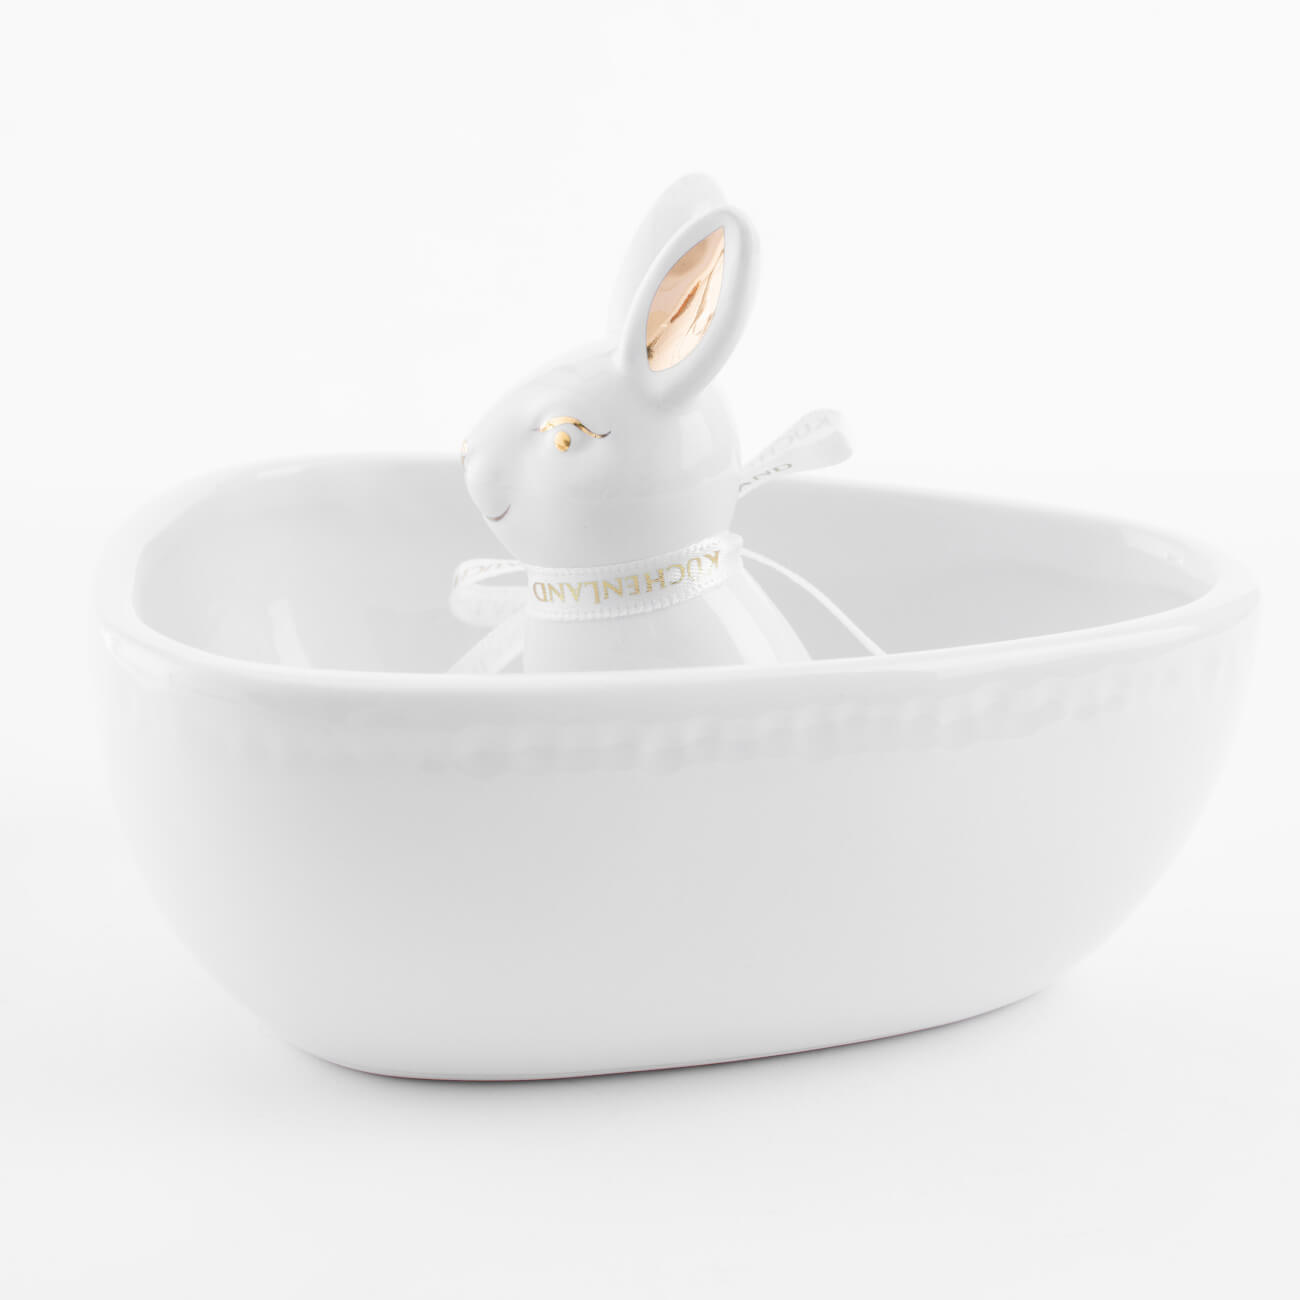 Конфетница, 13х13 см, керамика, белая, Кролик внутри, Easter gold